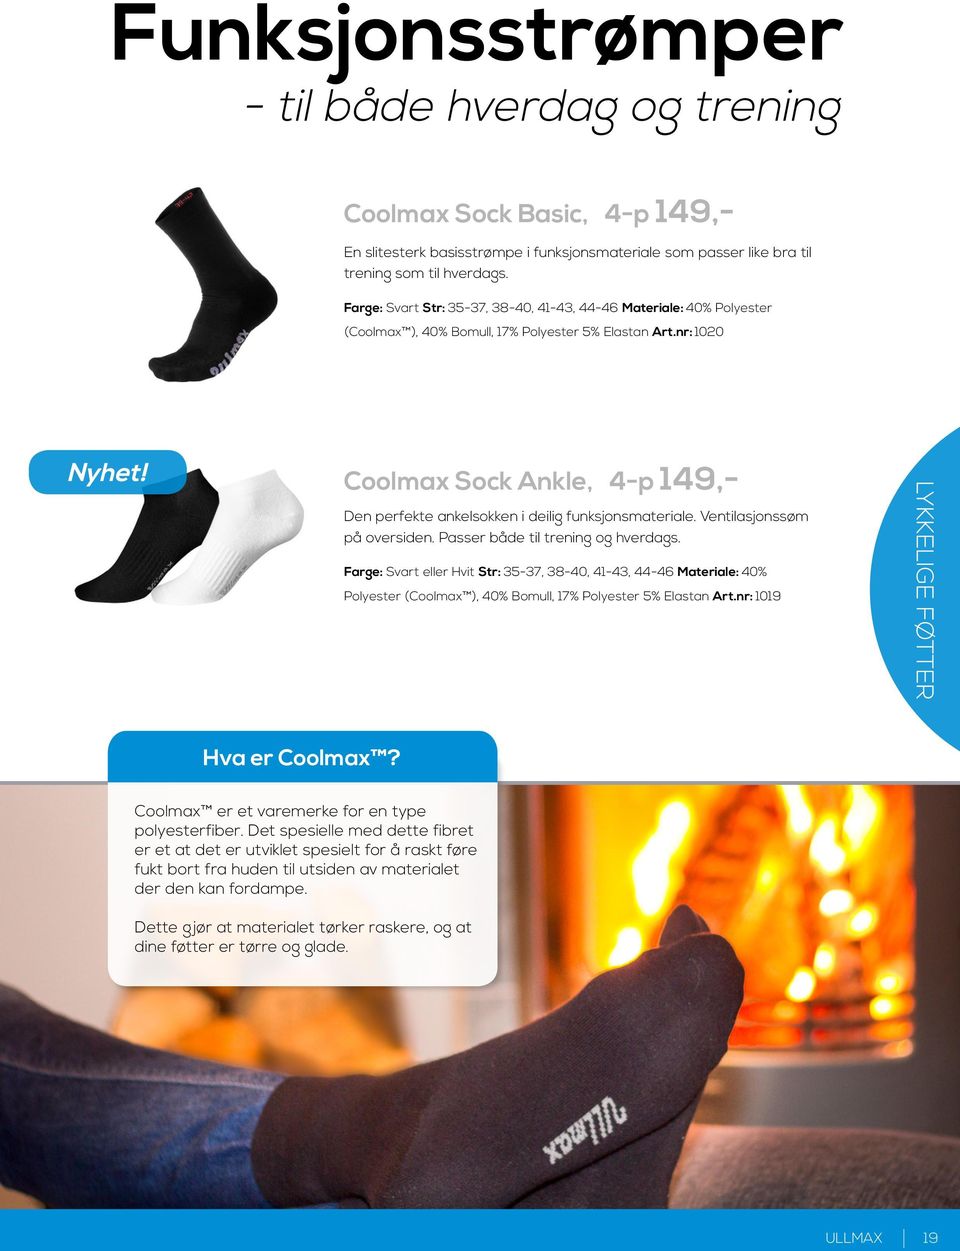 Coolmax Sock Ankle, 4-p 149,- Den perfekte ankelsokken i deilig funksjonsmateriale. Ventilasjonssøm på oversiden. Passer både til trening og hverdags.